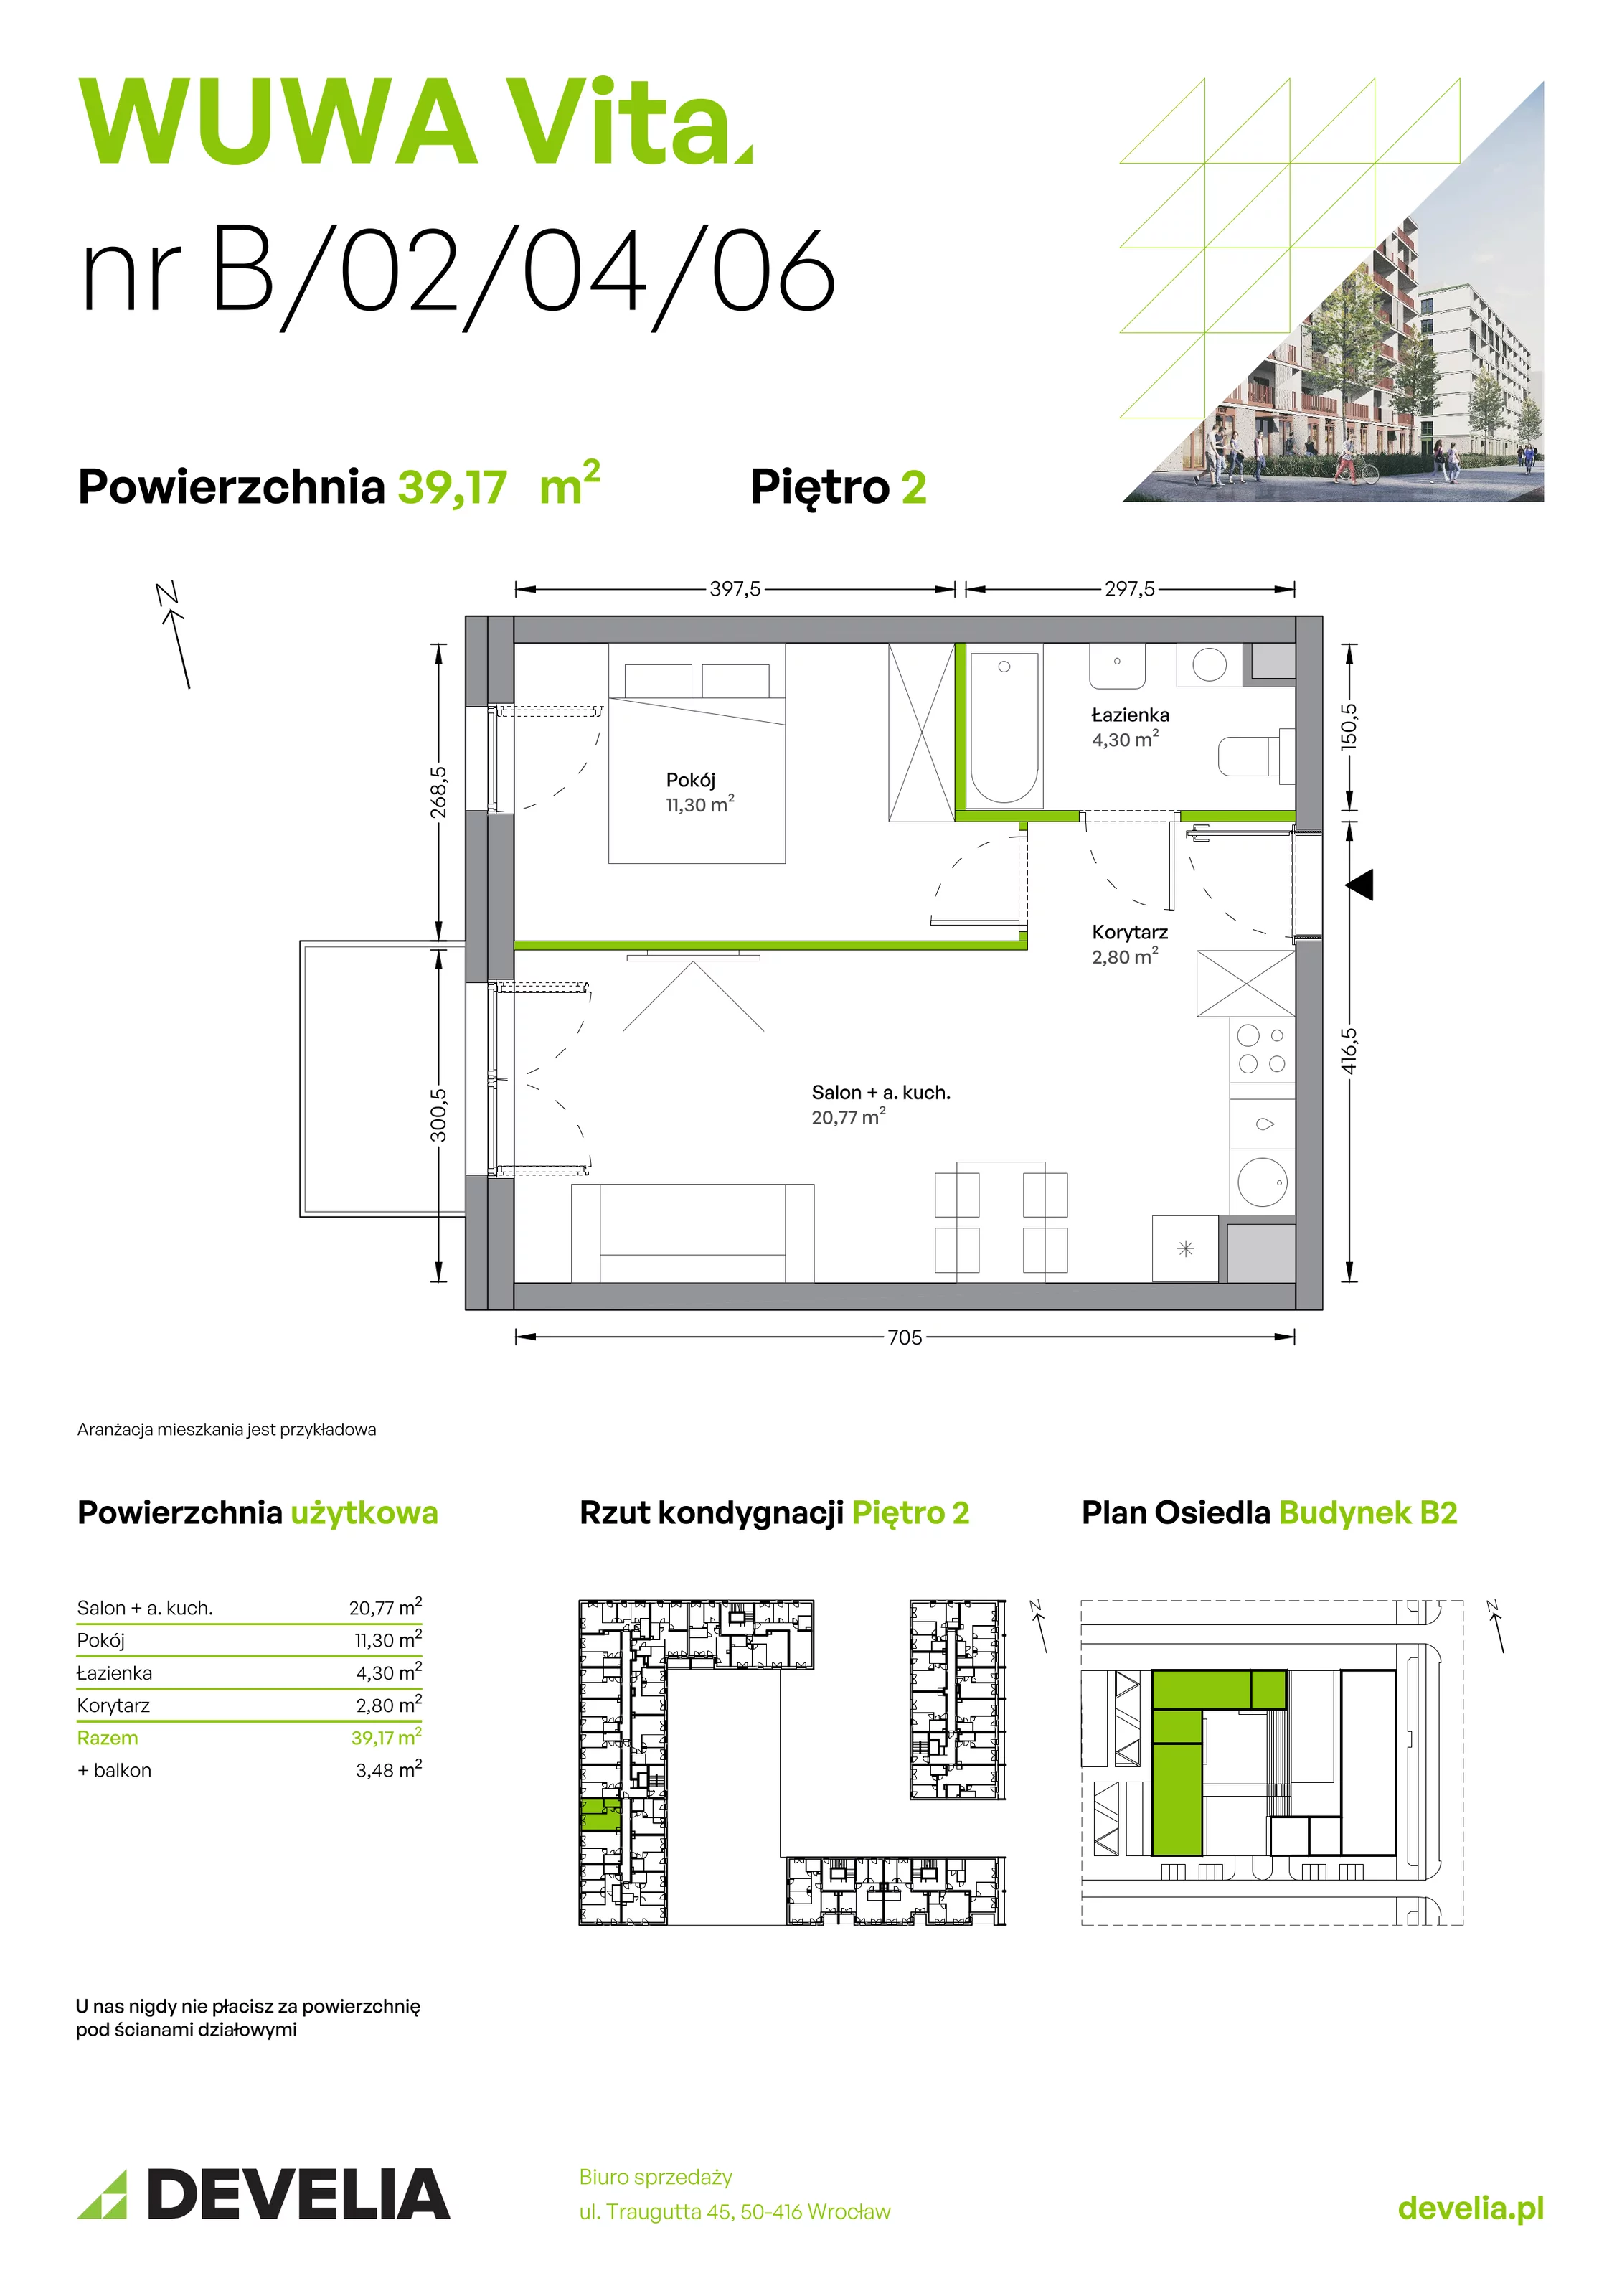 Mieszkanie 39,17 m², piętro 2, oferta nr B.02.04.06, WUWA Vita, Wrocław, Żerniki, Fabryczna, ul. Tadeusza Brzozy